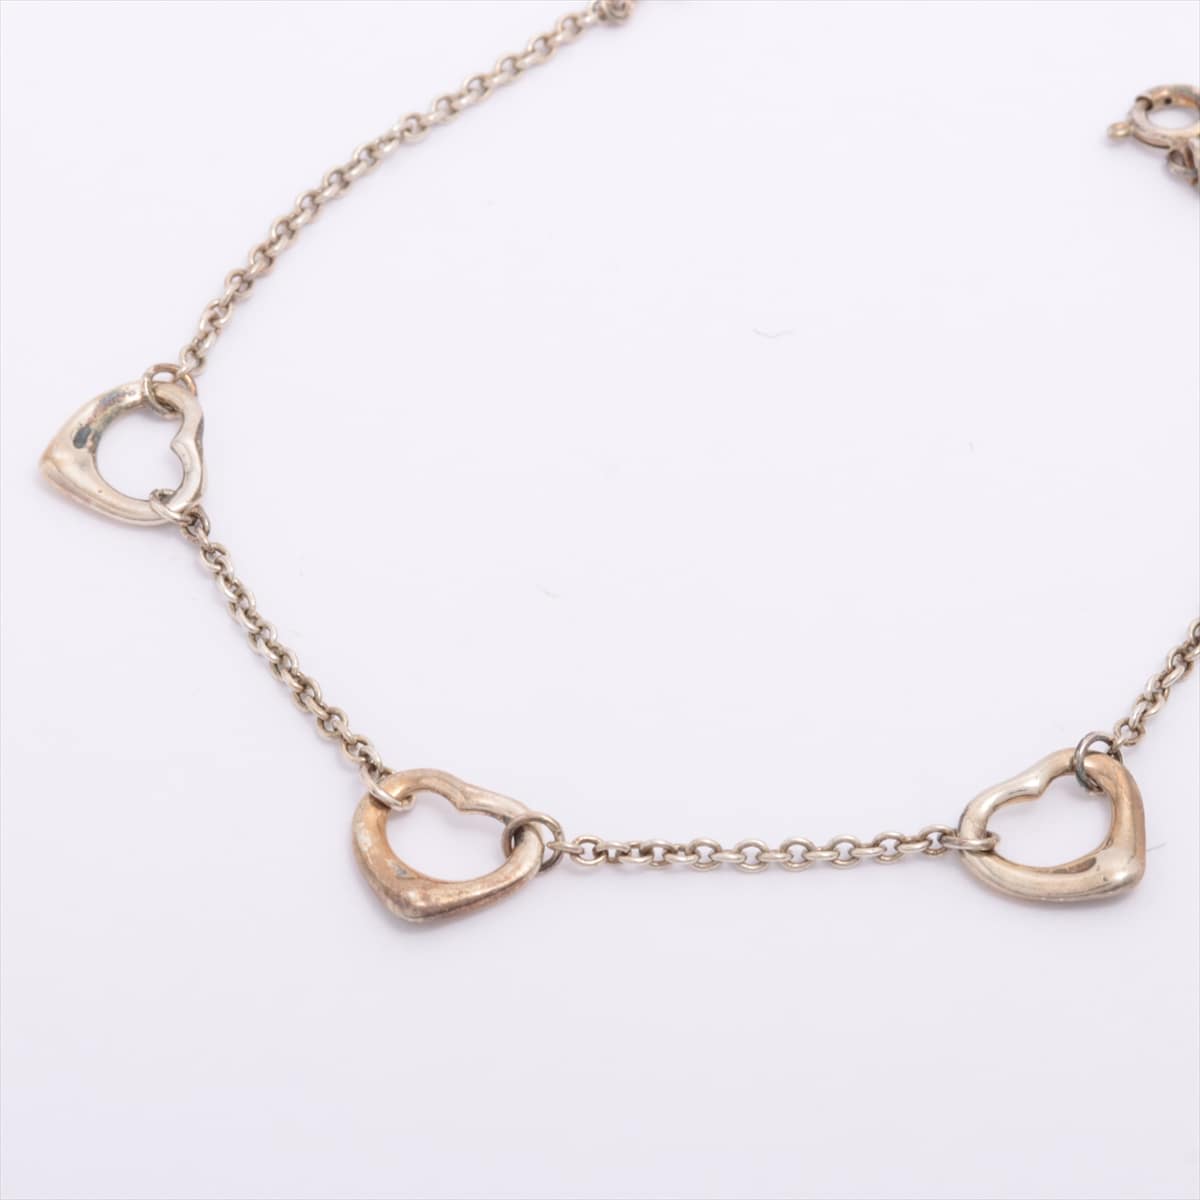 Tiffany Three Open Heart Bracelet 925 Silver